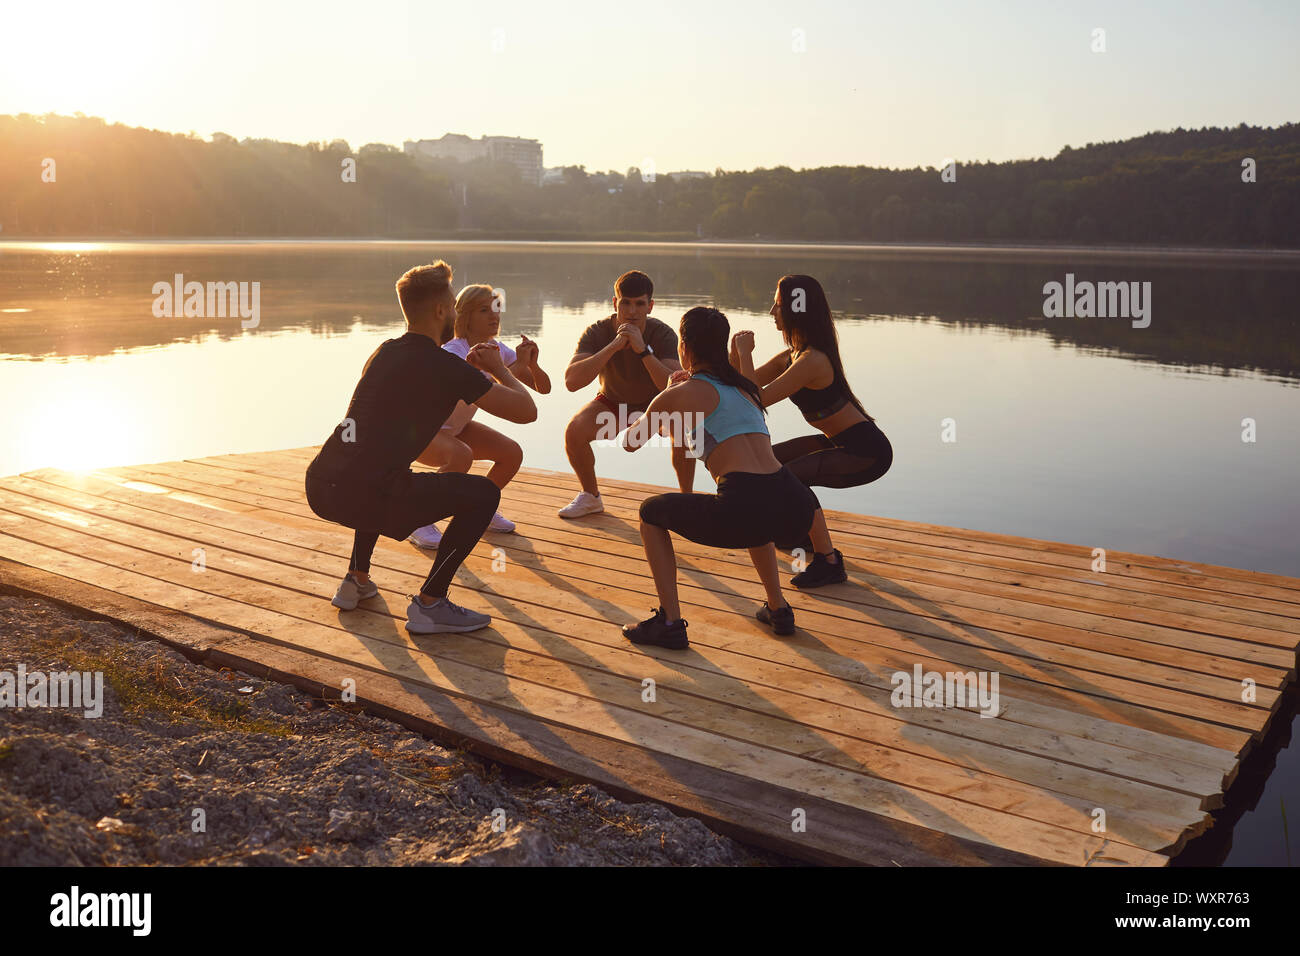 Un grupo de deportistas, hacer ejercicios en cuclillas en un parque junto al lago Foto de stock